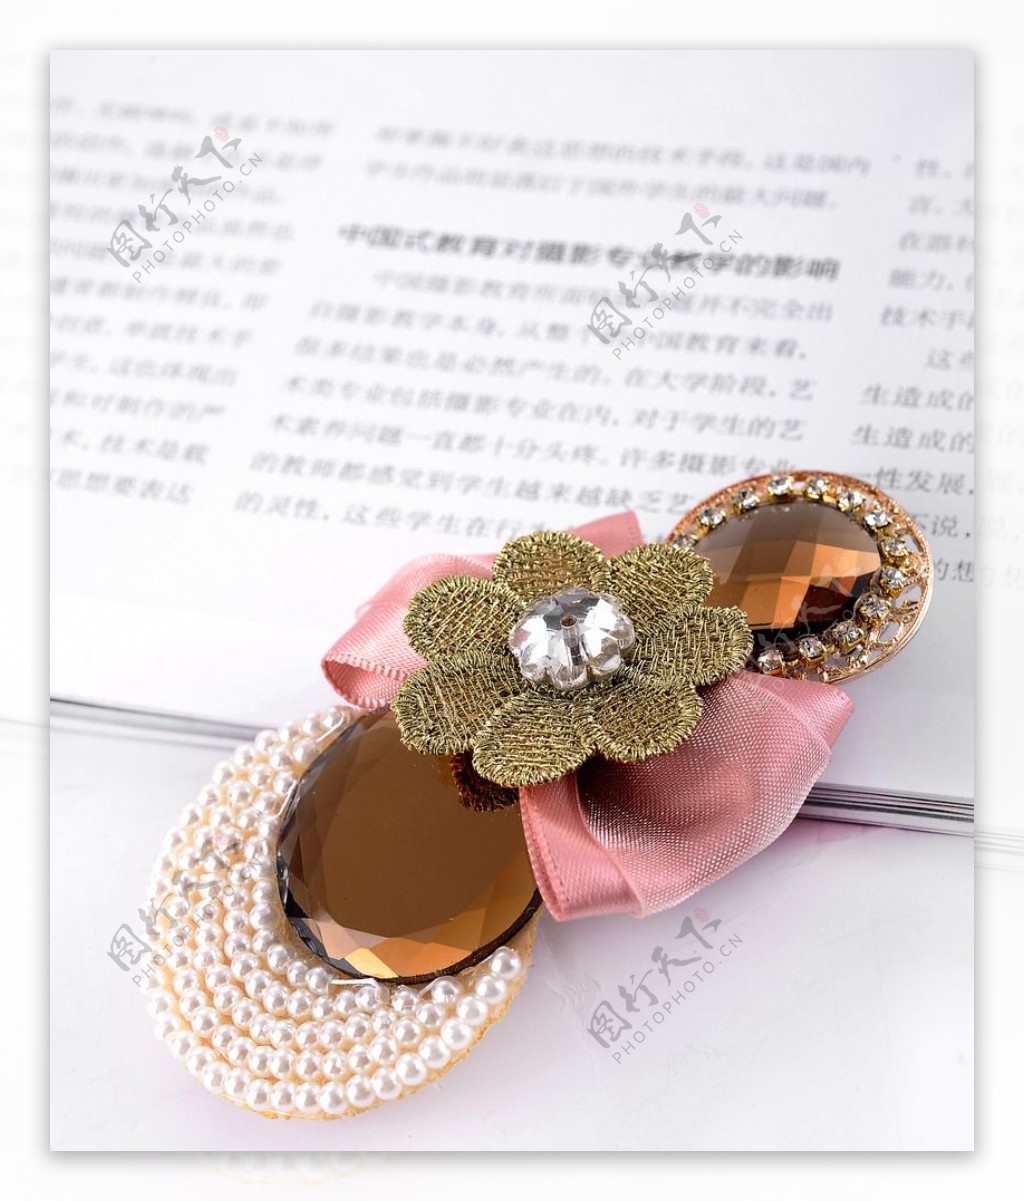 丝带手工制作漂亮头花，独一无二的中国风格格帽发夹发卡发饰手工制作方法 - 制作系手工网